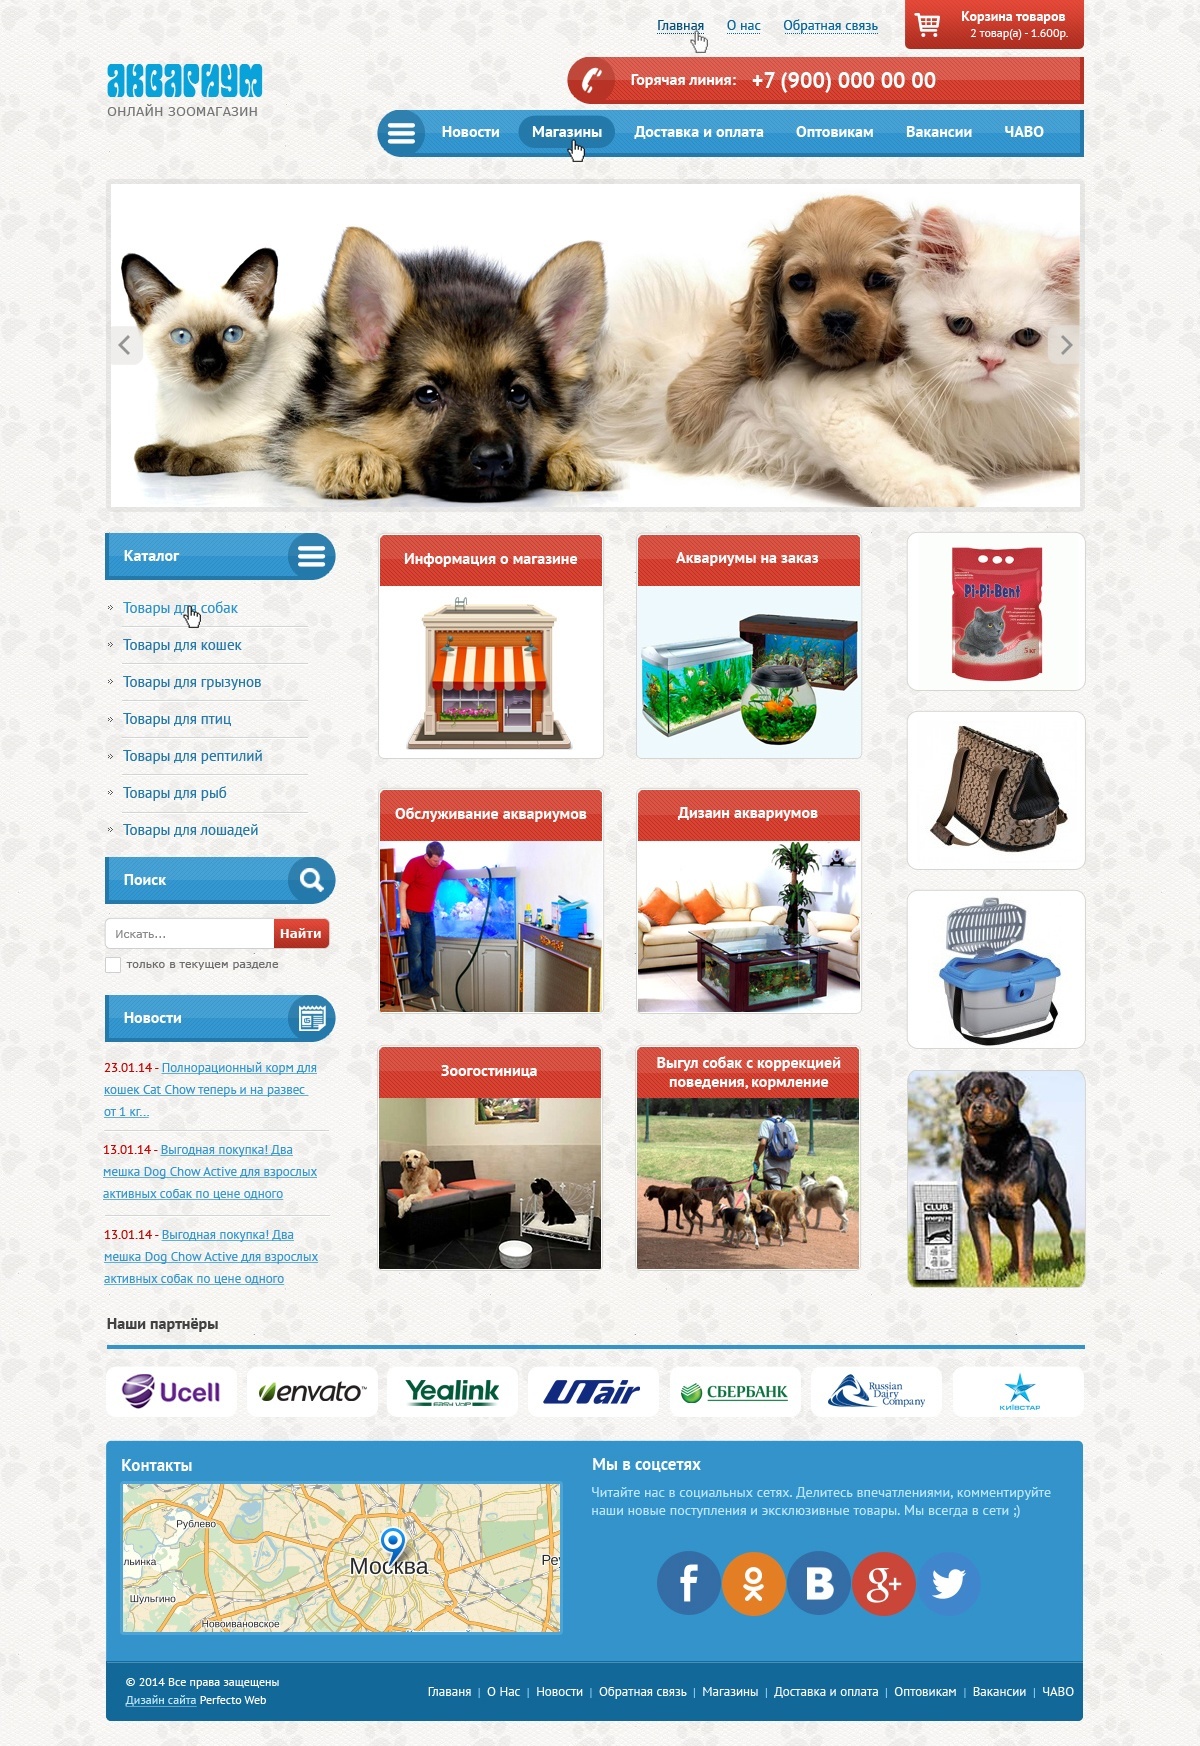 Aquarium - Online pet store №1- Home page